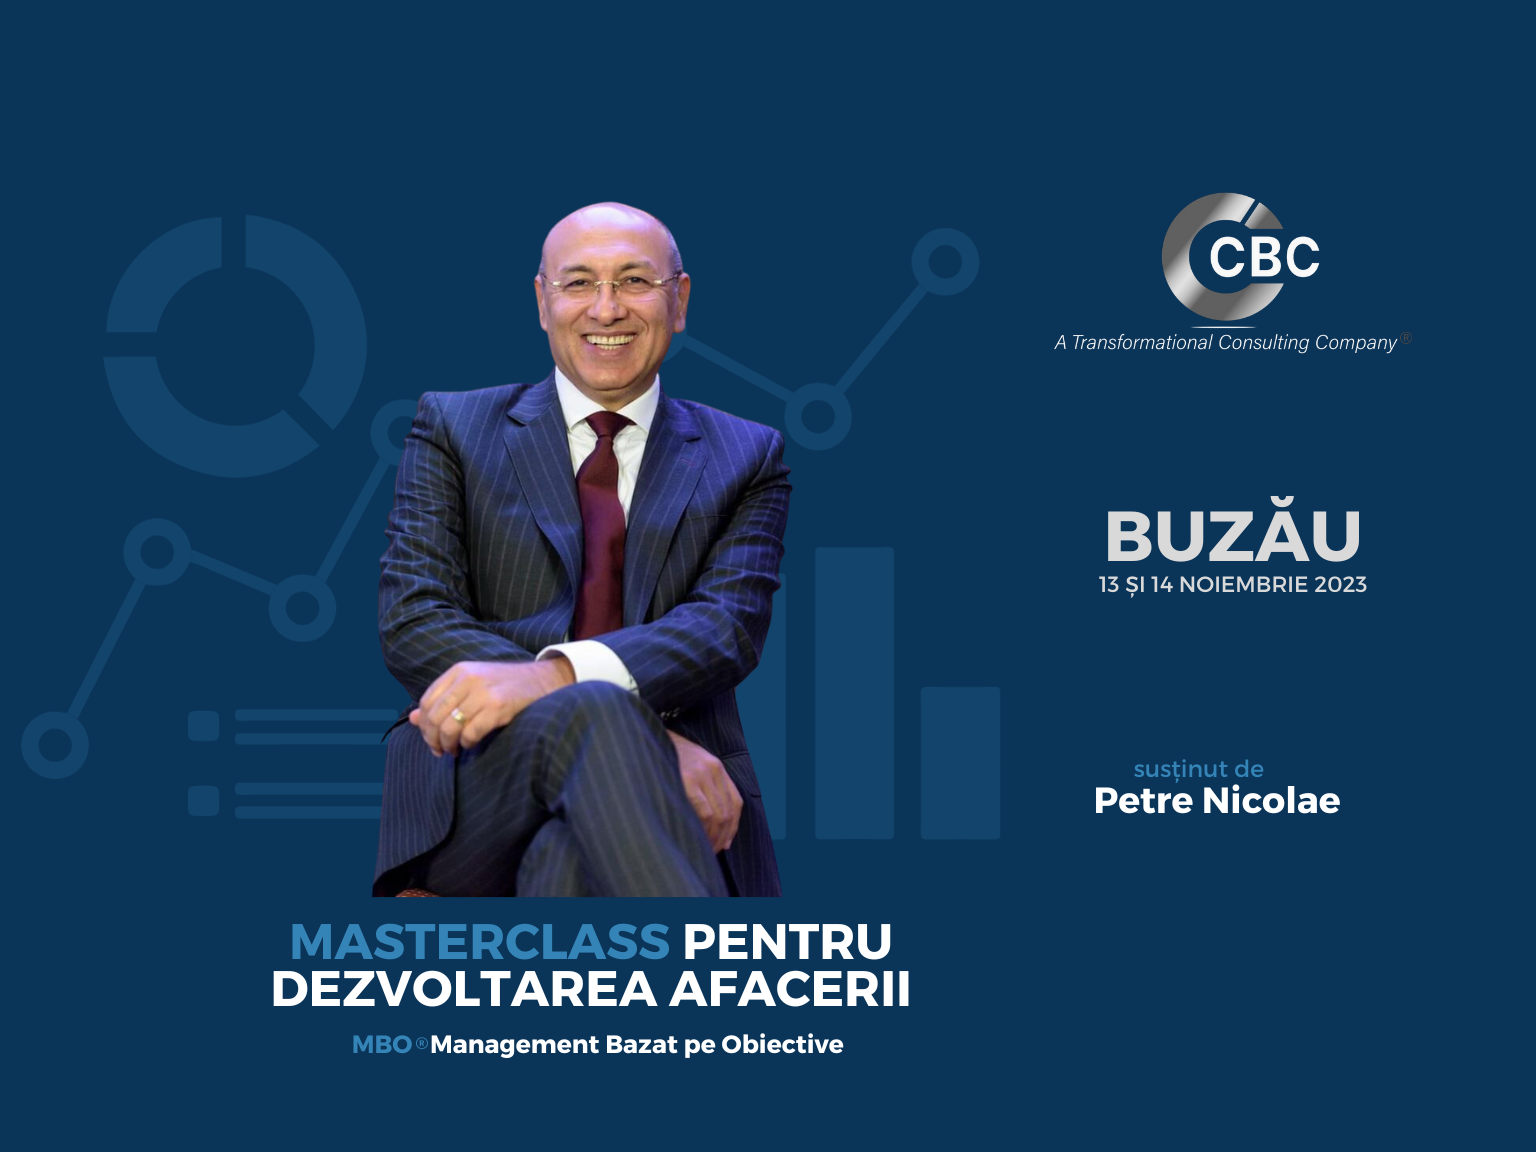 În 13 și 14 noiembrie 2023, Petre Nicolae și echipa CBC vin la Buzău într-un Masterclass pentru Dezvoltarea Afacerii